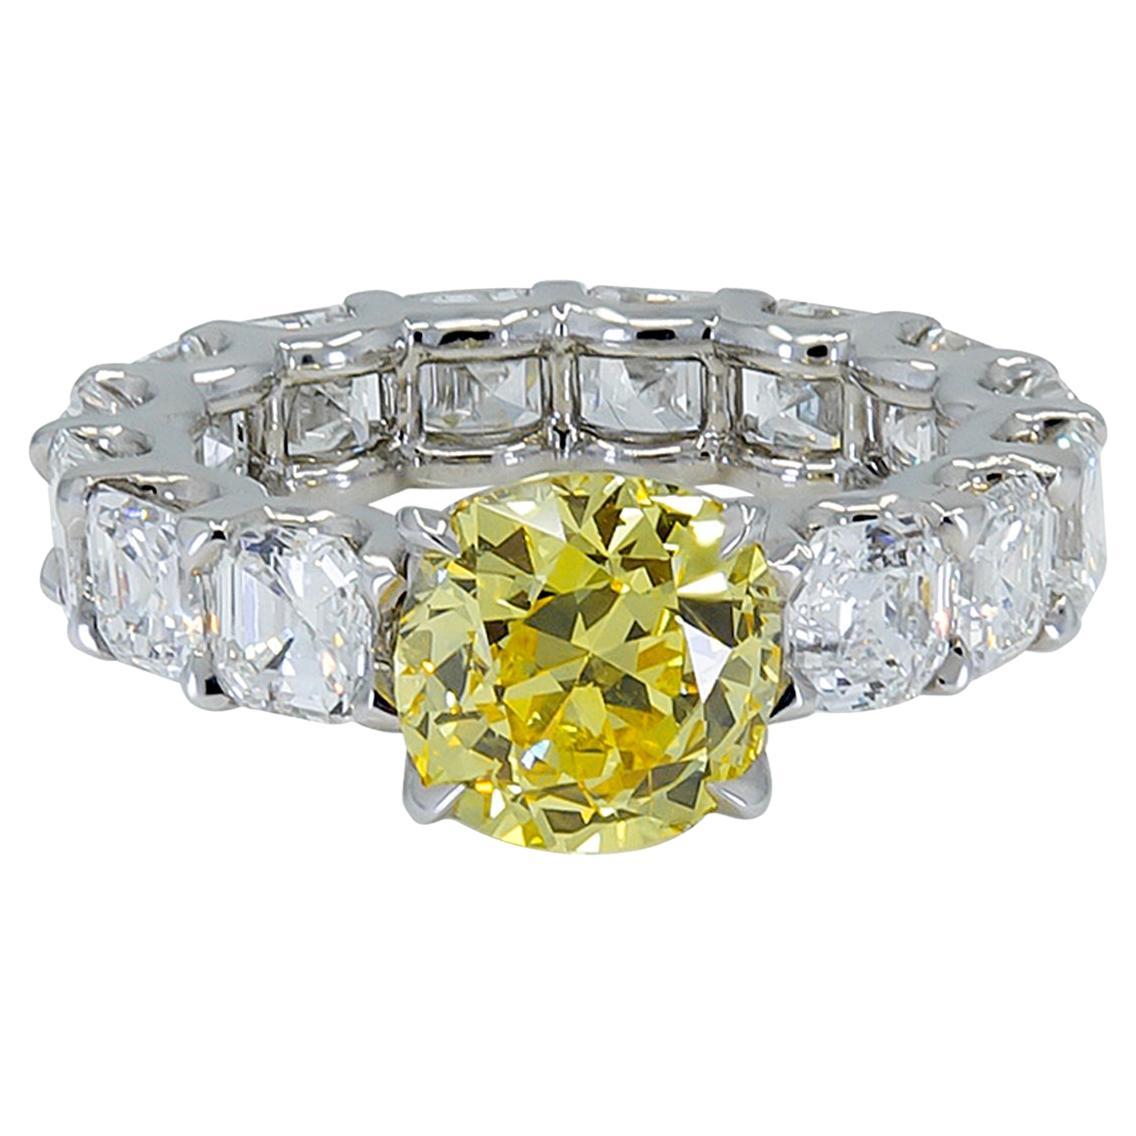 Spectra Fine Jewelry GIA zertifiziert 3,02 Karat Ausgefallener lebhaft gelber Diamantring